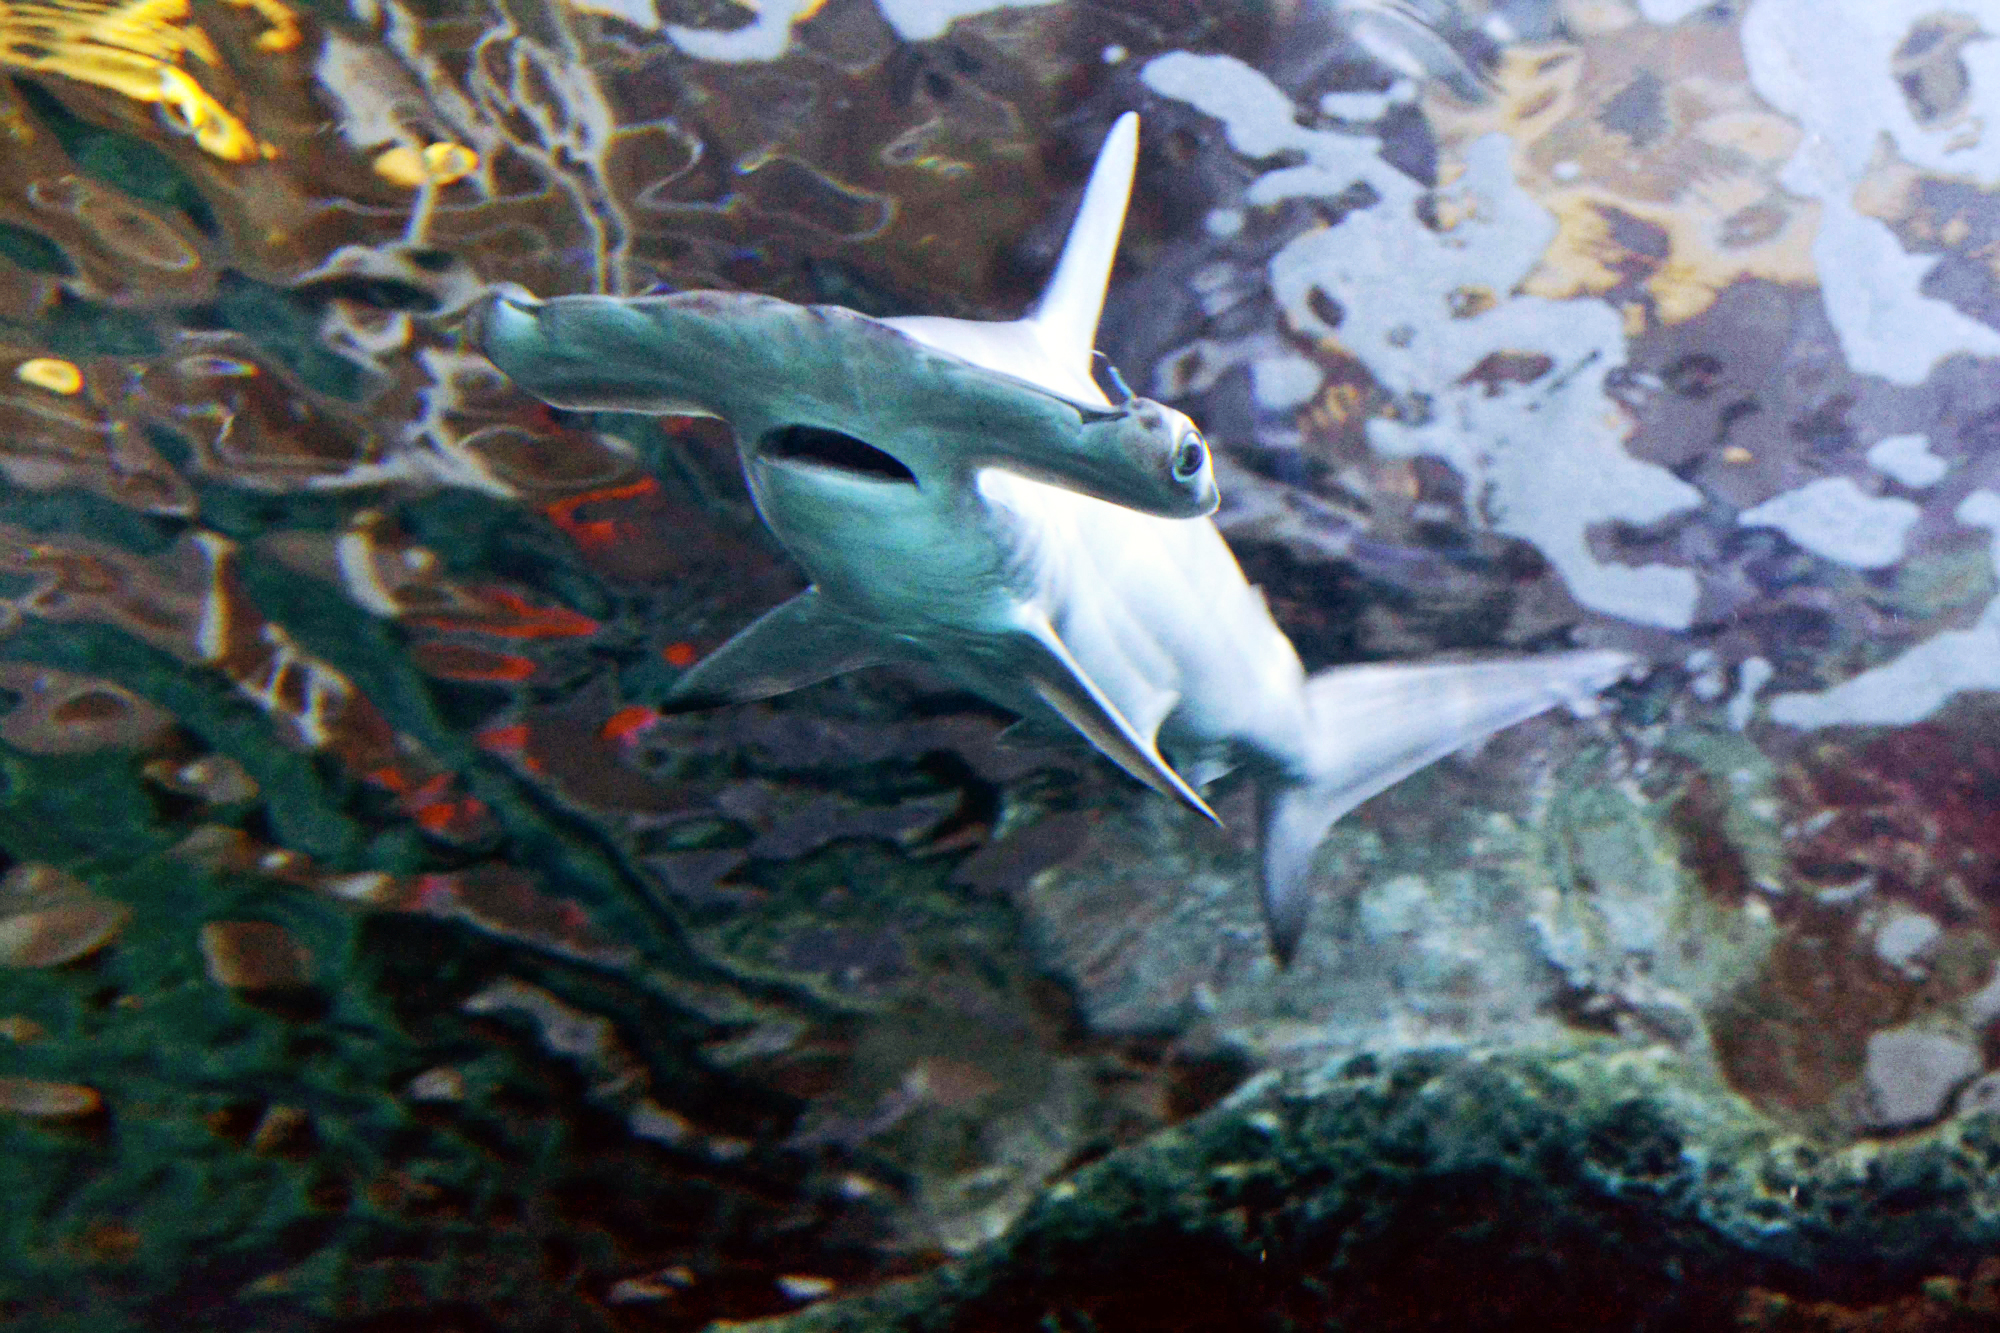 cincinnati aquarium shark bridge